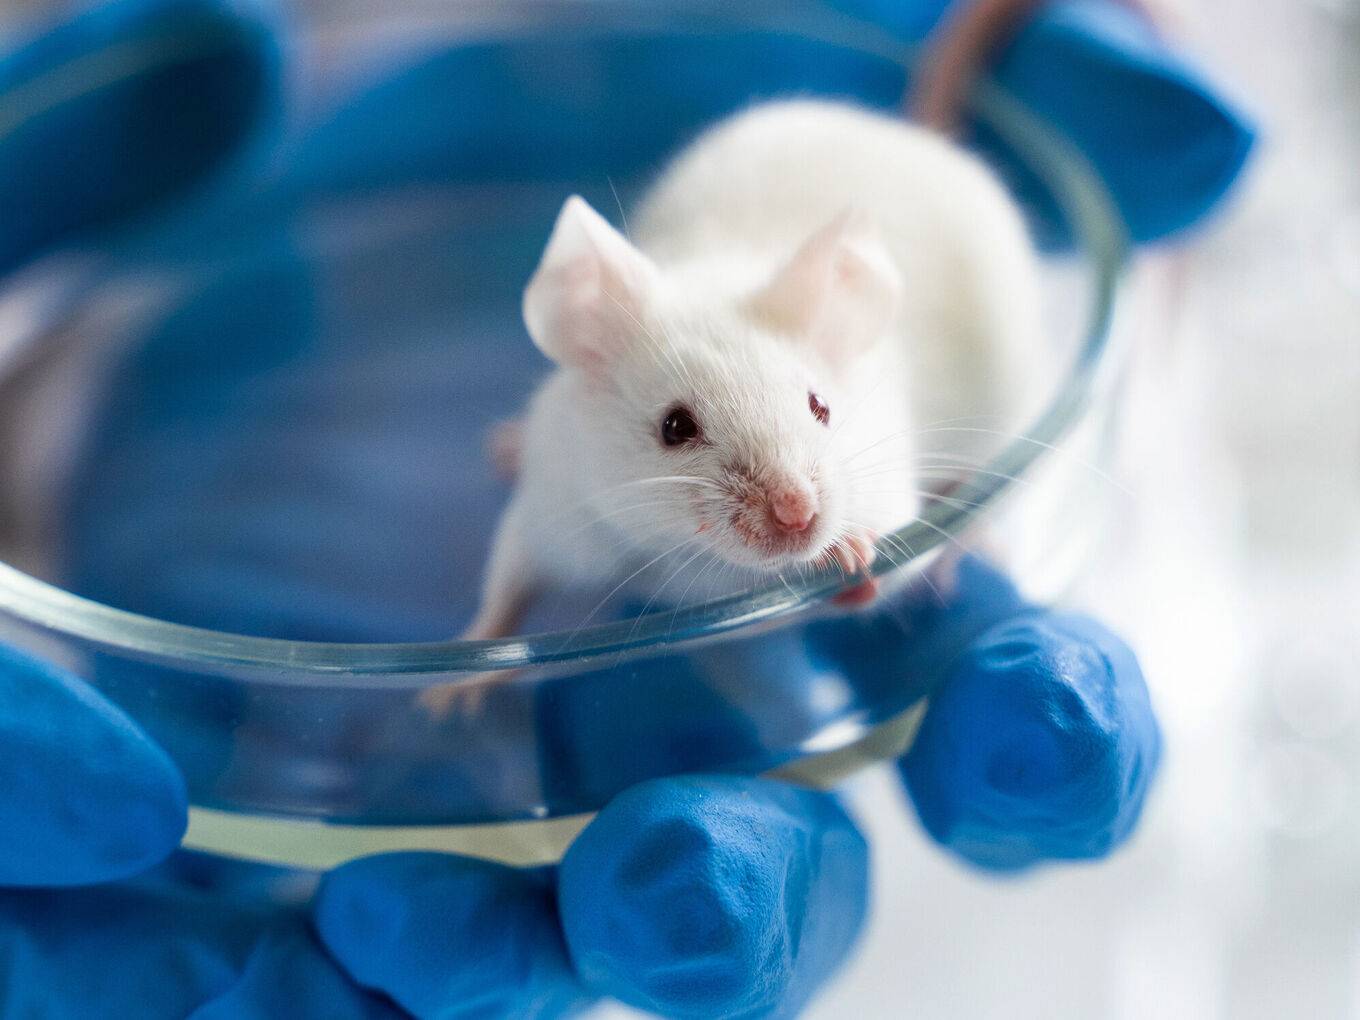 Hand in blauem Gummihandschuh hält Petrischale mit weißer, lebendiger Maus darin